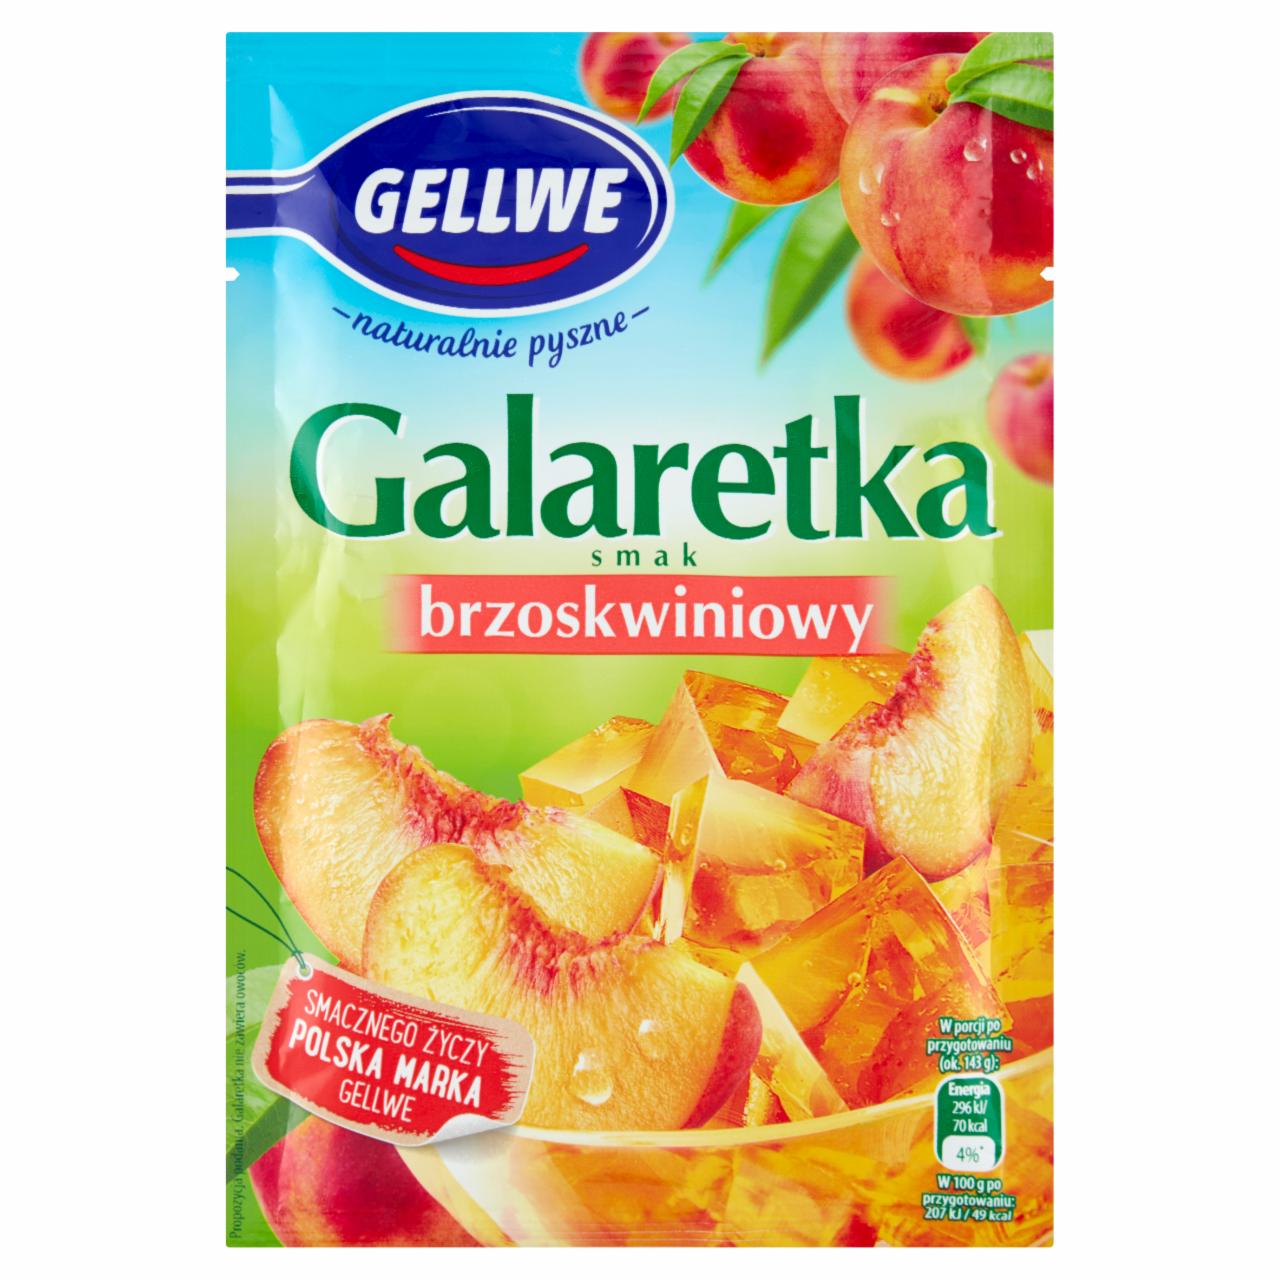 Zdjęcia - Gellwe Galaretka smak brzoskwiniowy 72 g